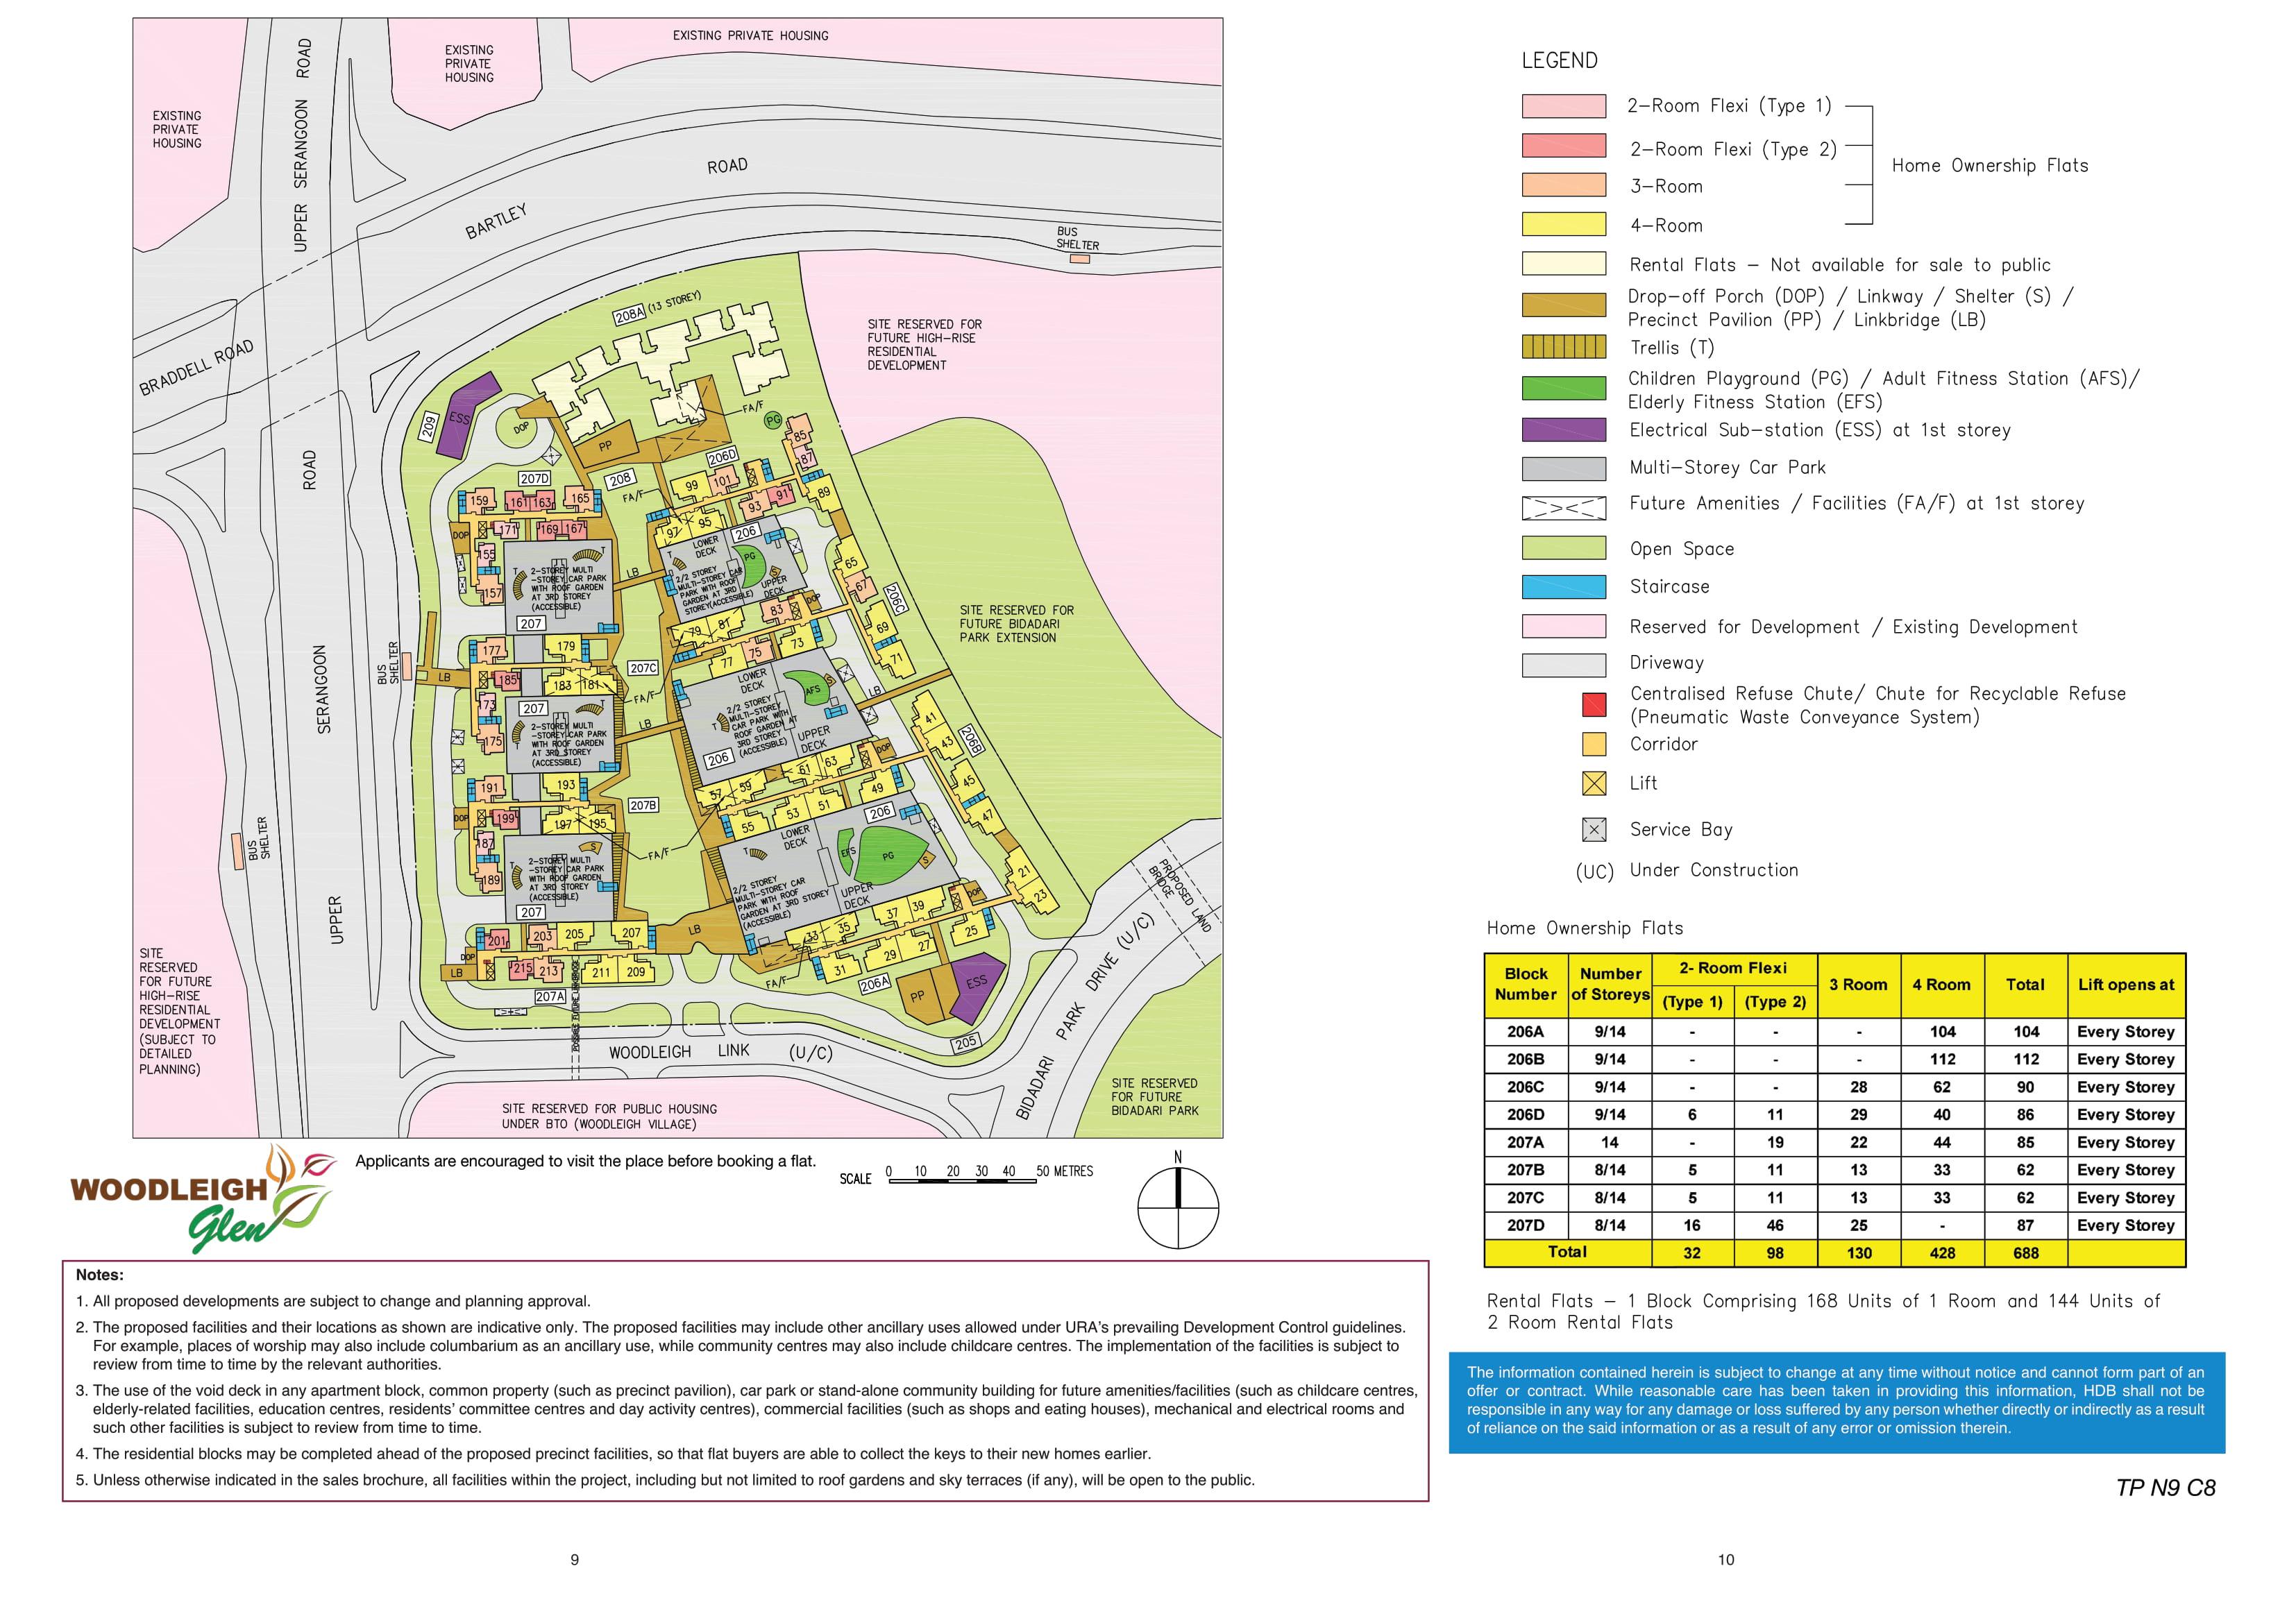 Woodleigh Glen site-plan